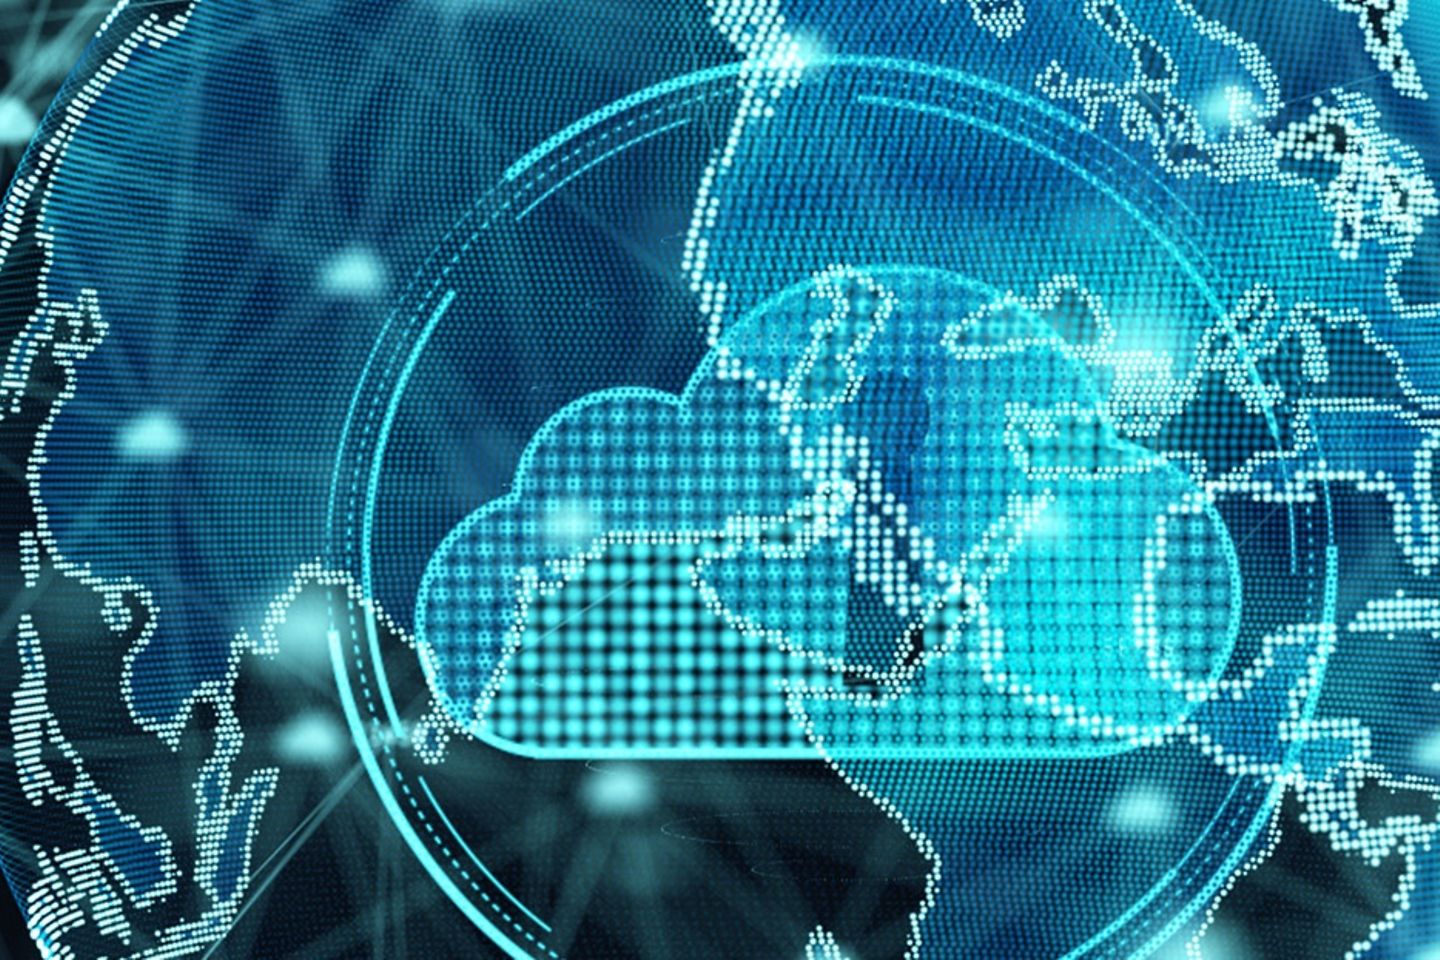 Représentation virtuelle du globe terrestre derrière un nuage portant le symbole d'un cadenas